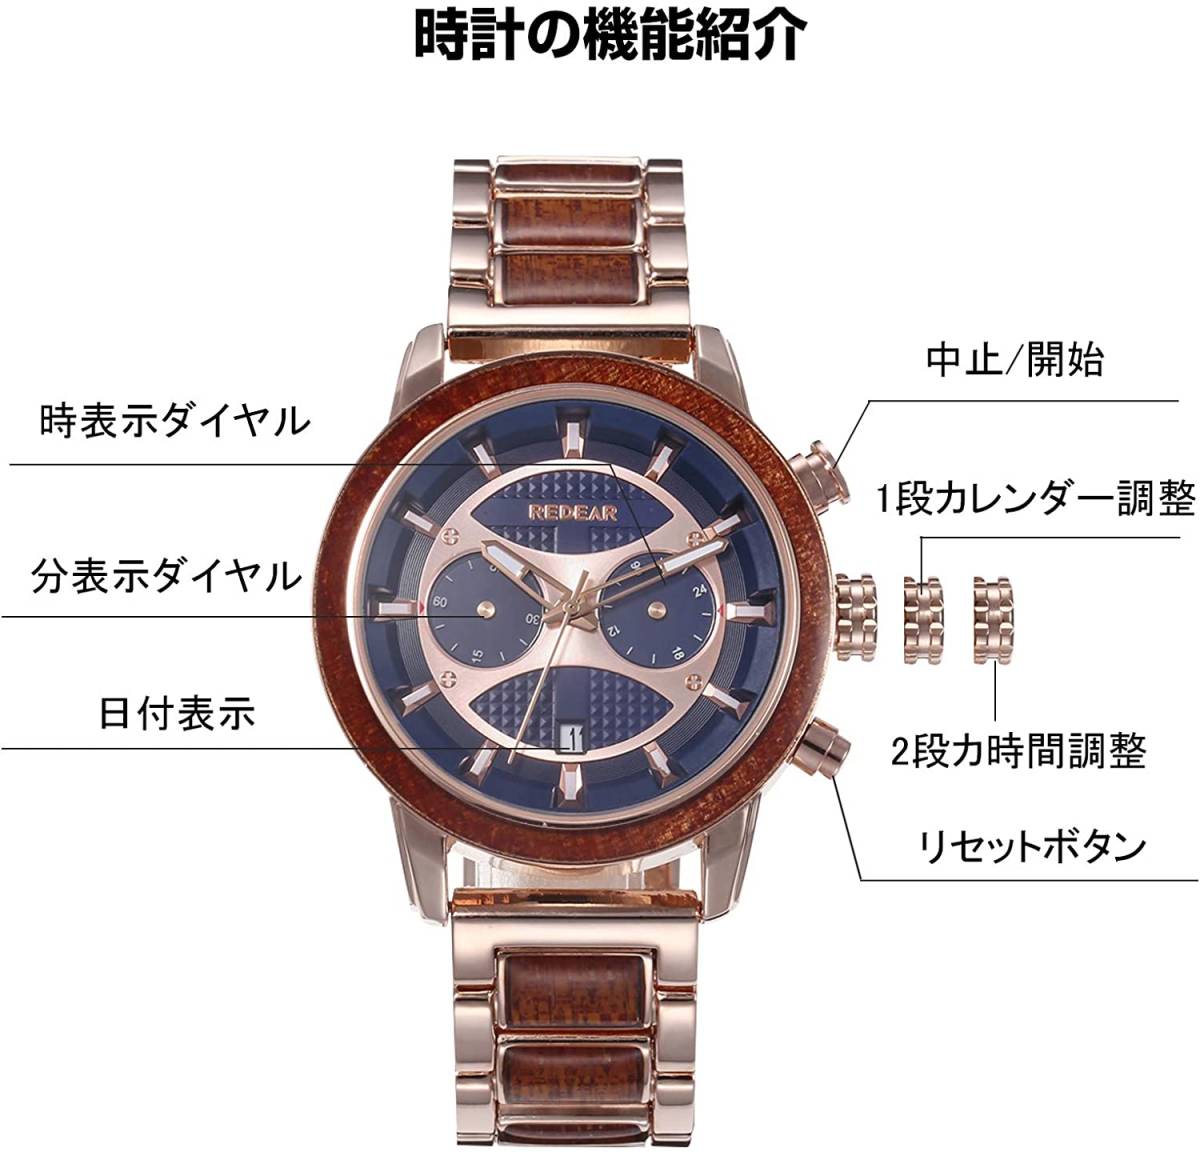 オシャレな 木製腕時計 ローズゴールド 日本製 クオーツ 高品質 メンズ 天然木 木製 合金 ウォッチ カジュアル ウッド モダン 男性 腕時計_画像2